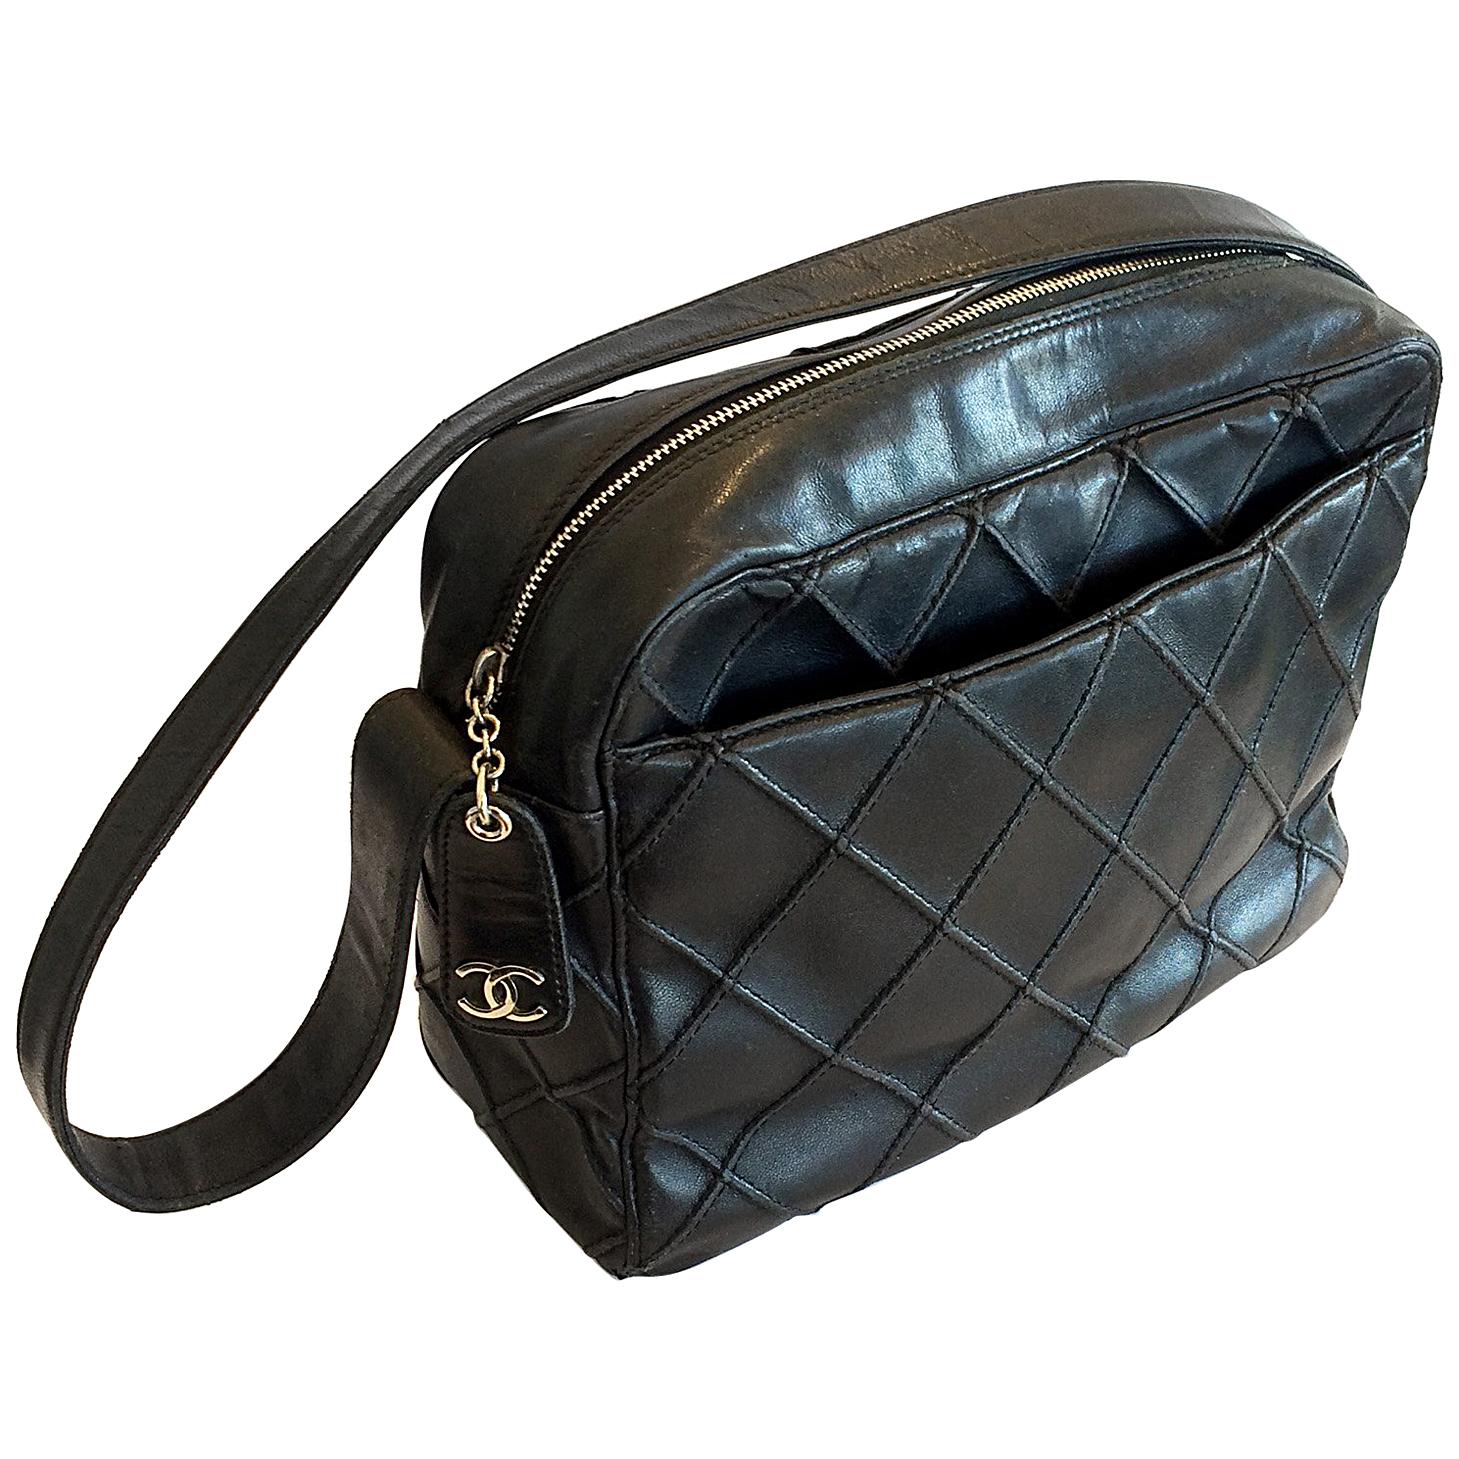 Authentic Chanel Vintage Shoulder Bag Handbag For Sale